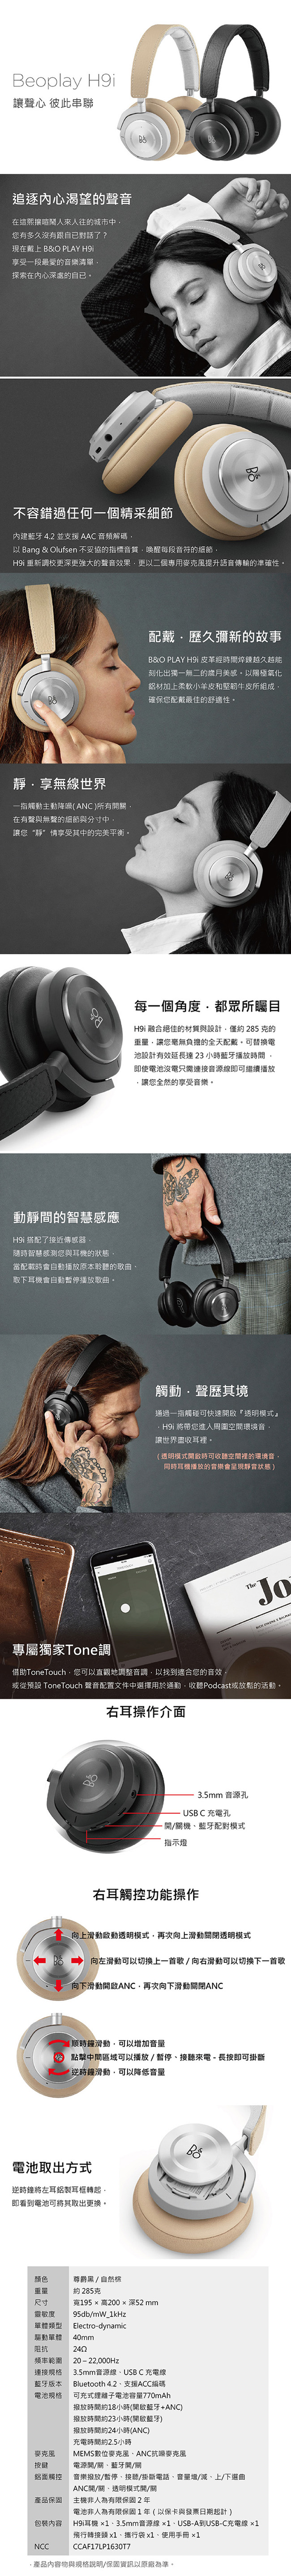 耳機 ✦ B&O Beoplay H9i 耳罩式 無線藍芽